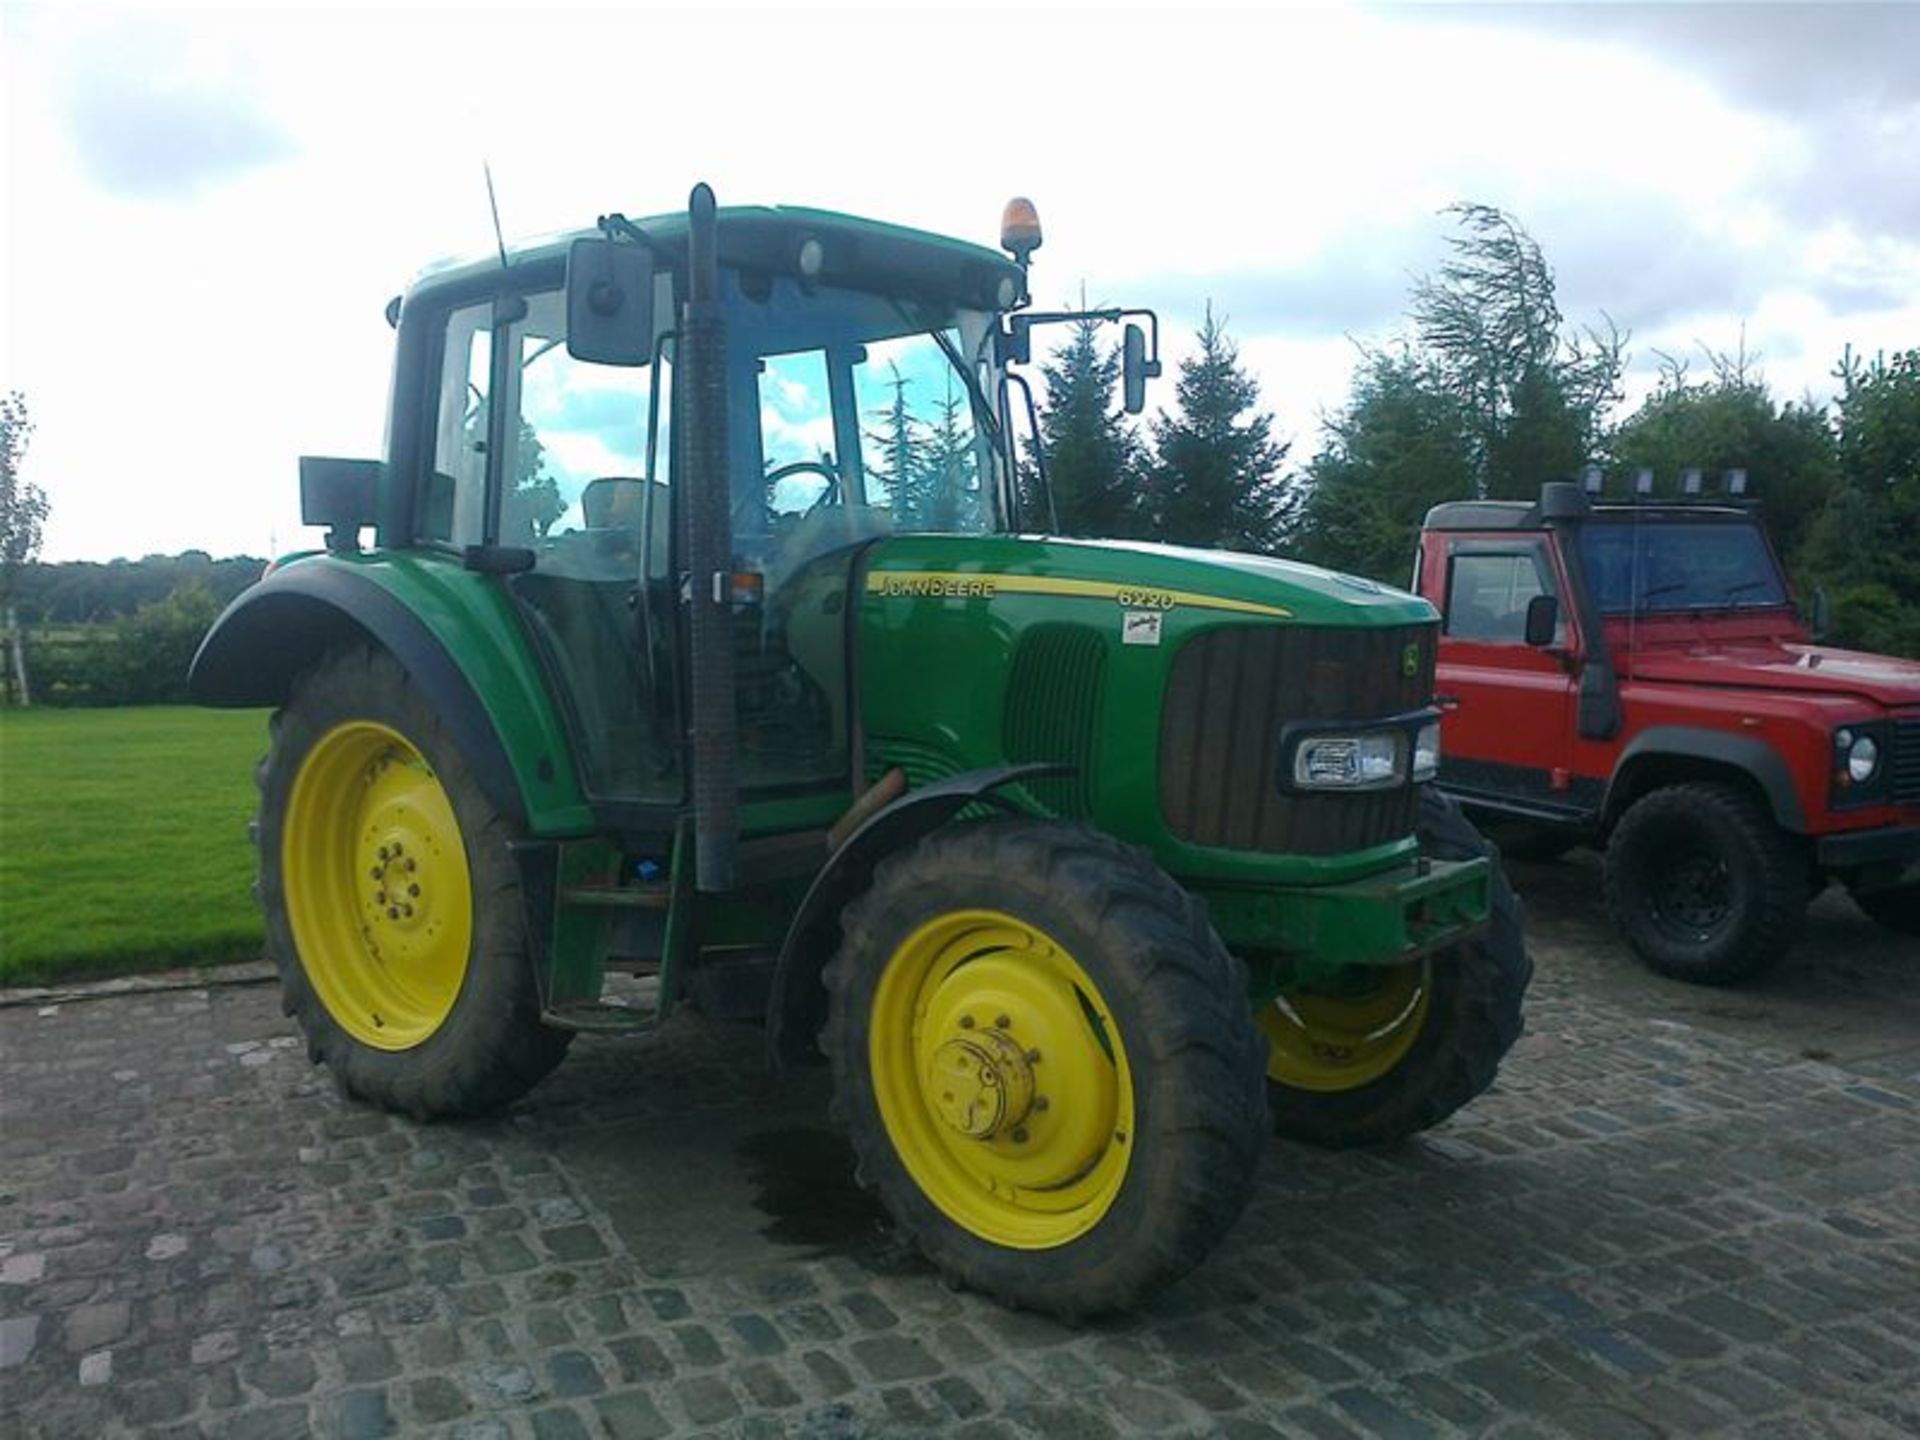 2003 John Deere 6220 Premium Tractor - Image 4 of 4